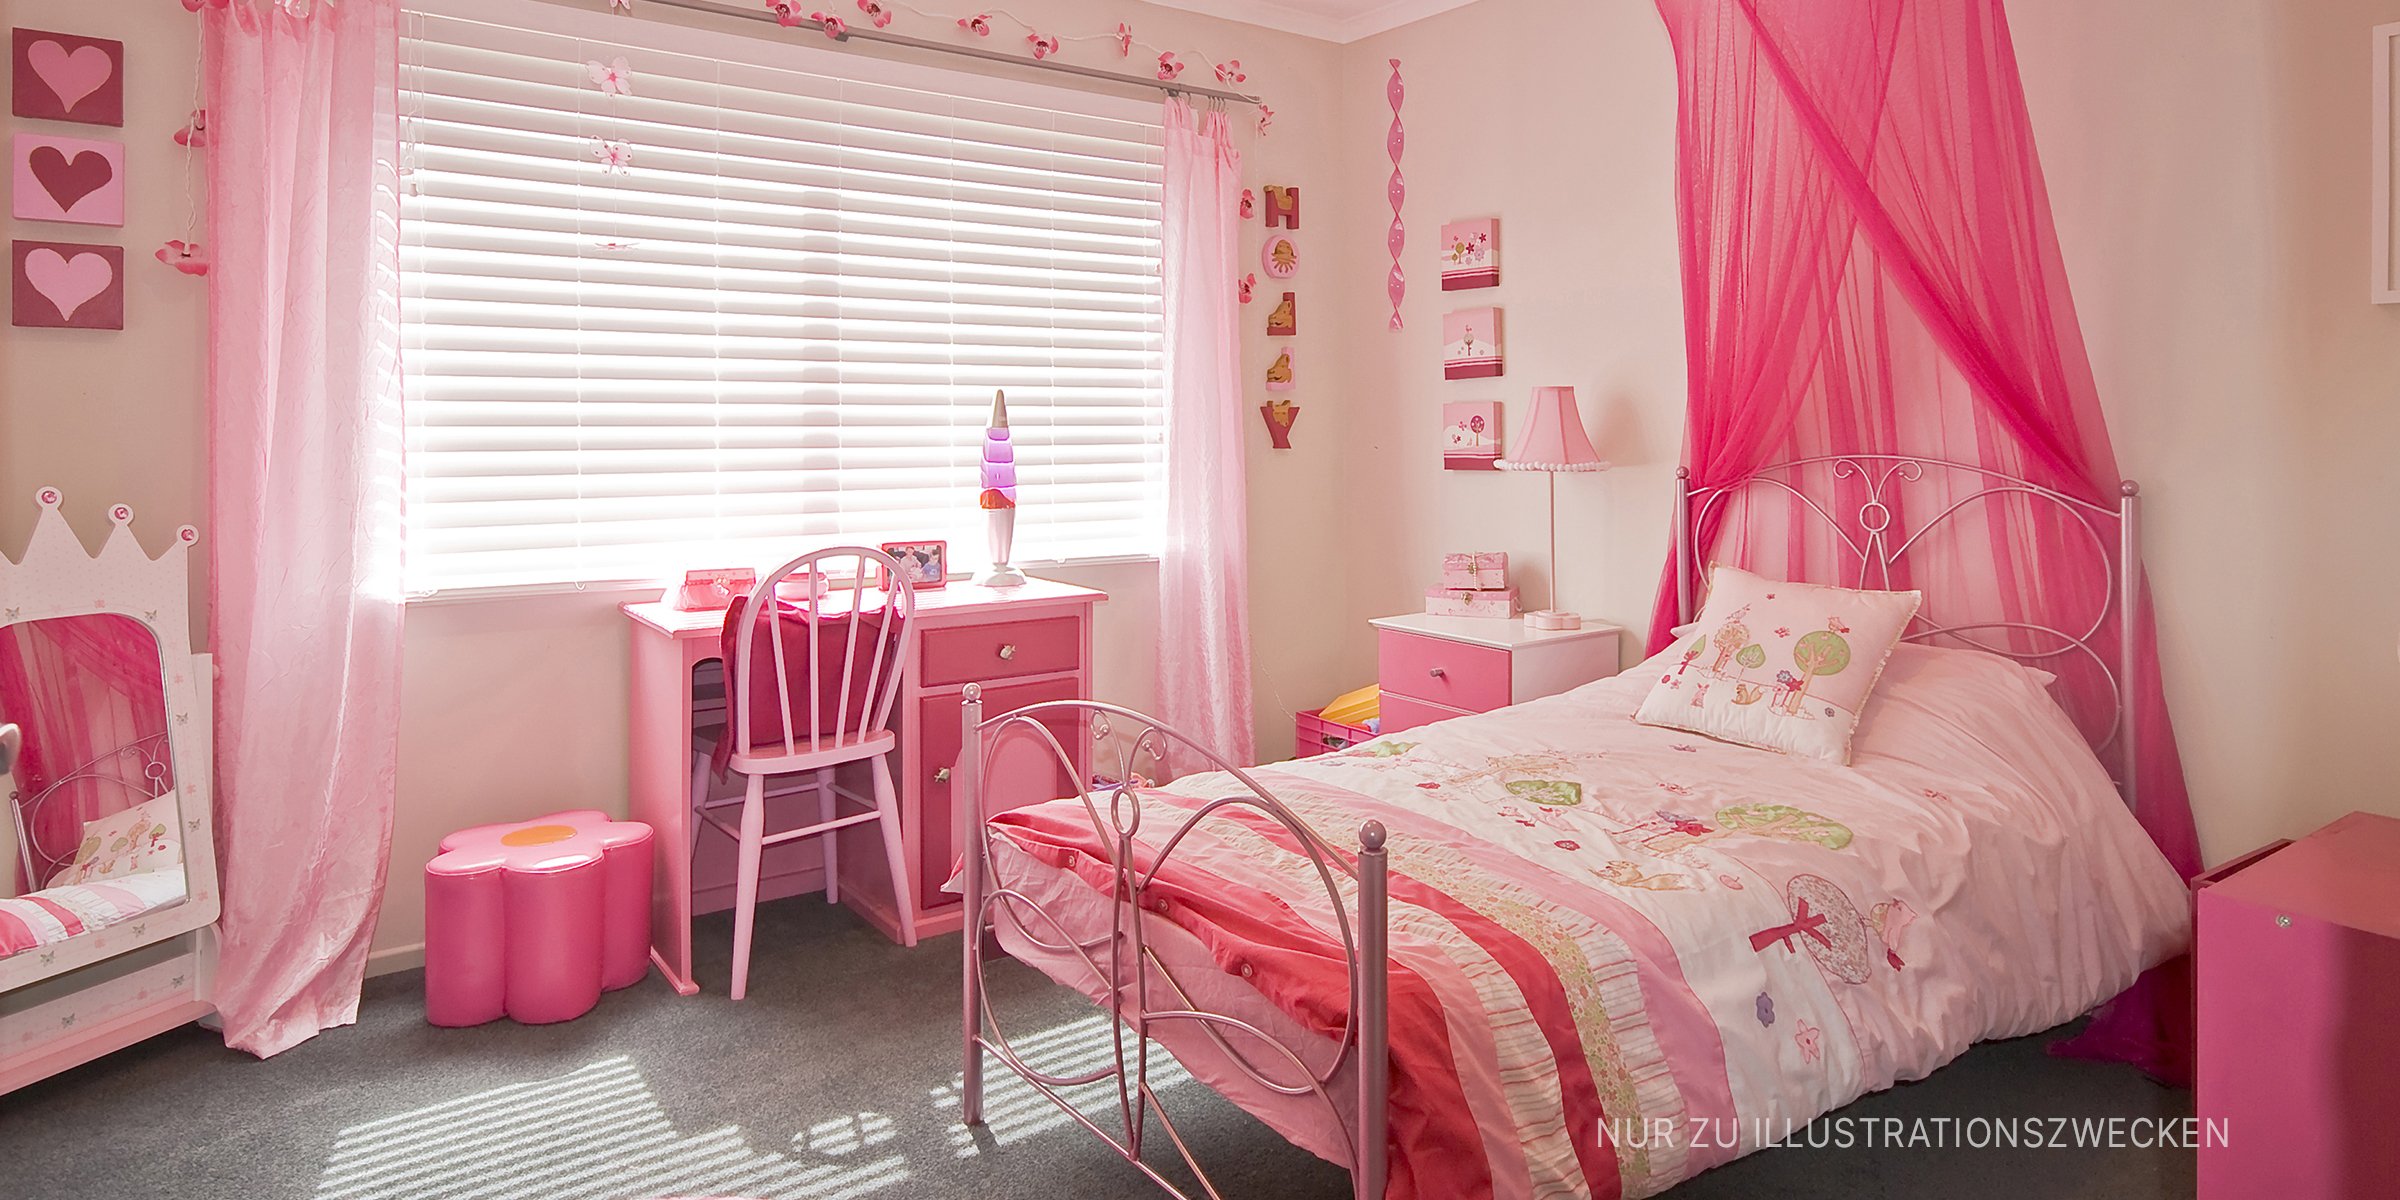 Ein rosa Schlafzimmer. | Quelle: Shutterstock